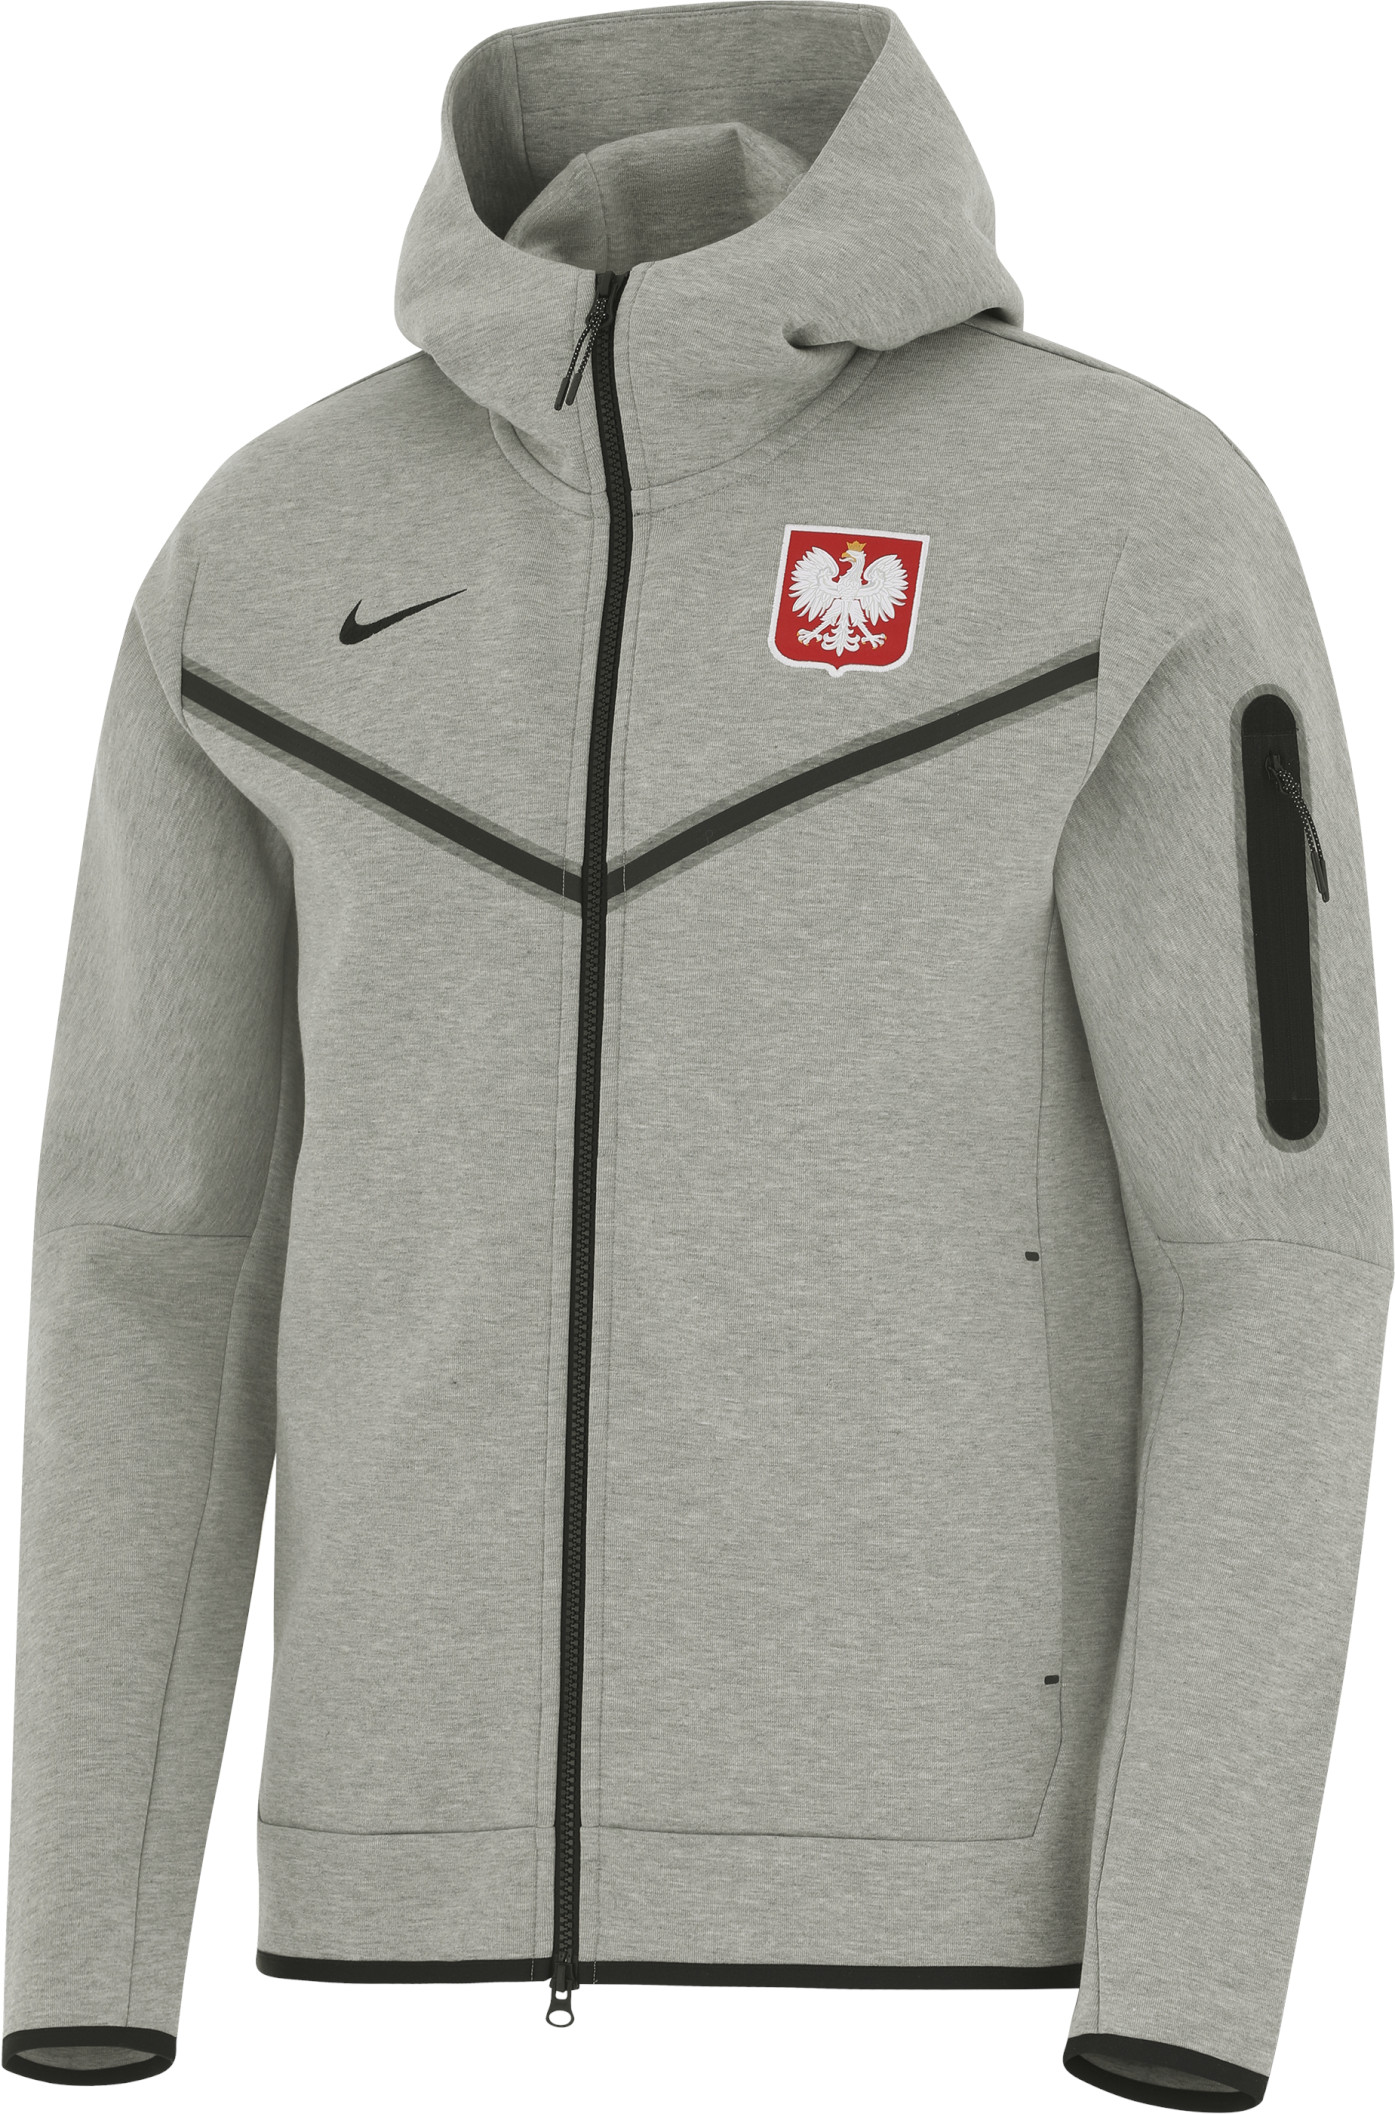 Pánská mikina s kapucí a dlouhým zipem Nike Sportswear Tech Fleece Polsko Windrunner